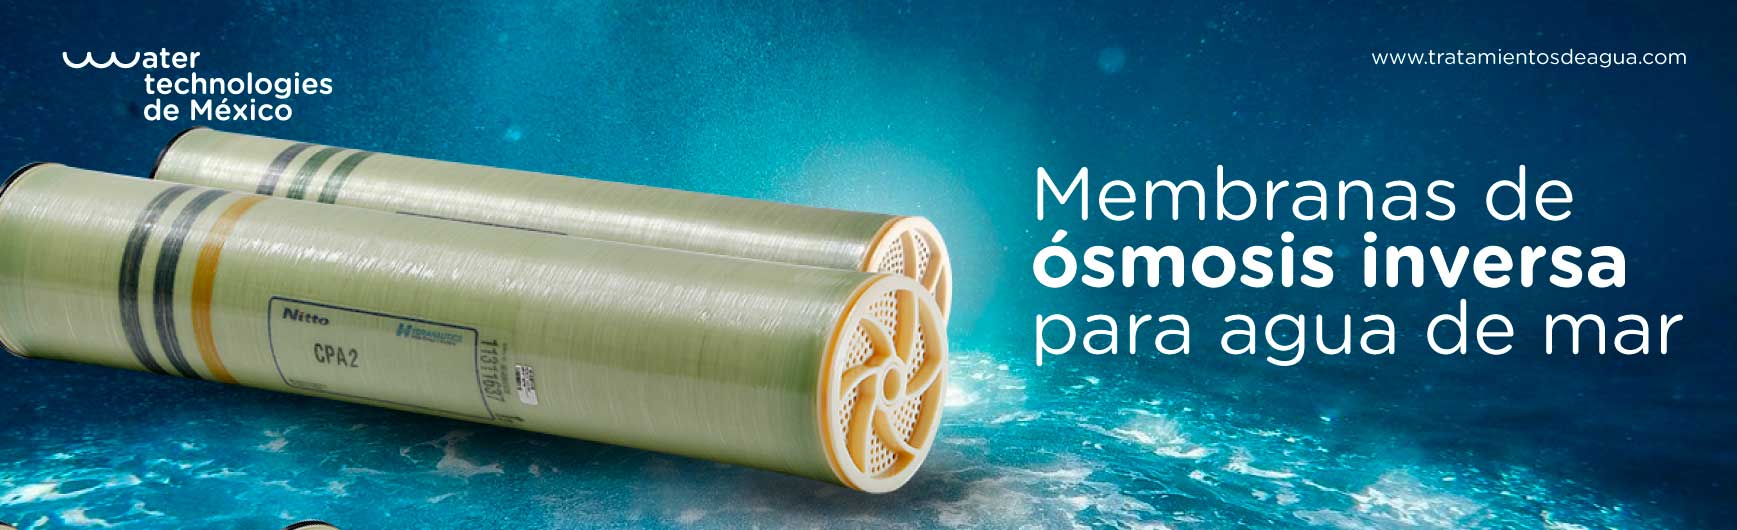 Membranas de ósmosis inversa para agua de mar: desalinización eficiente y sostenible.